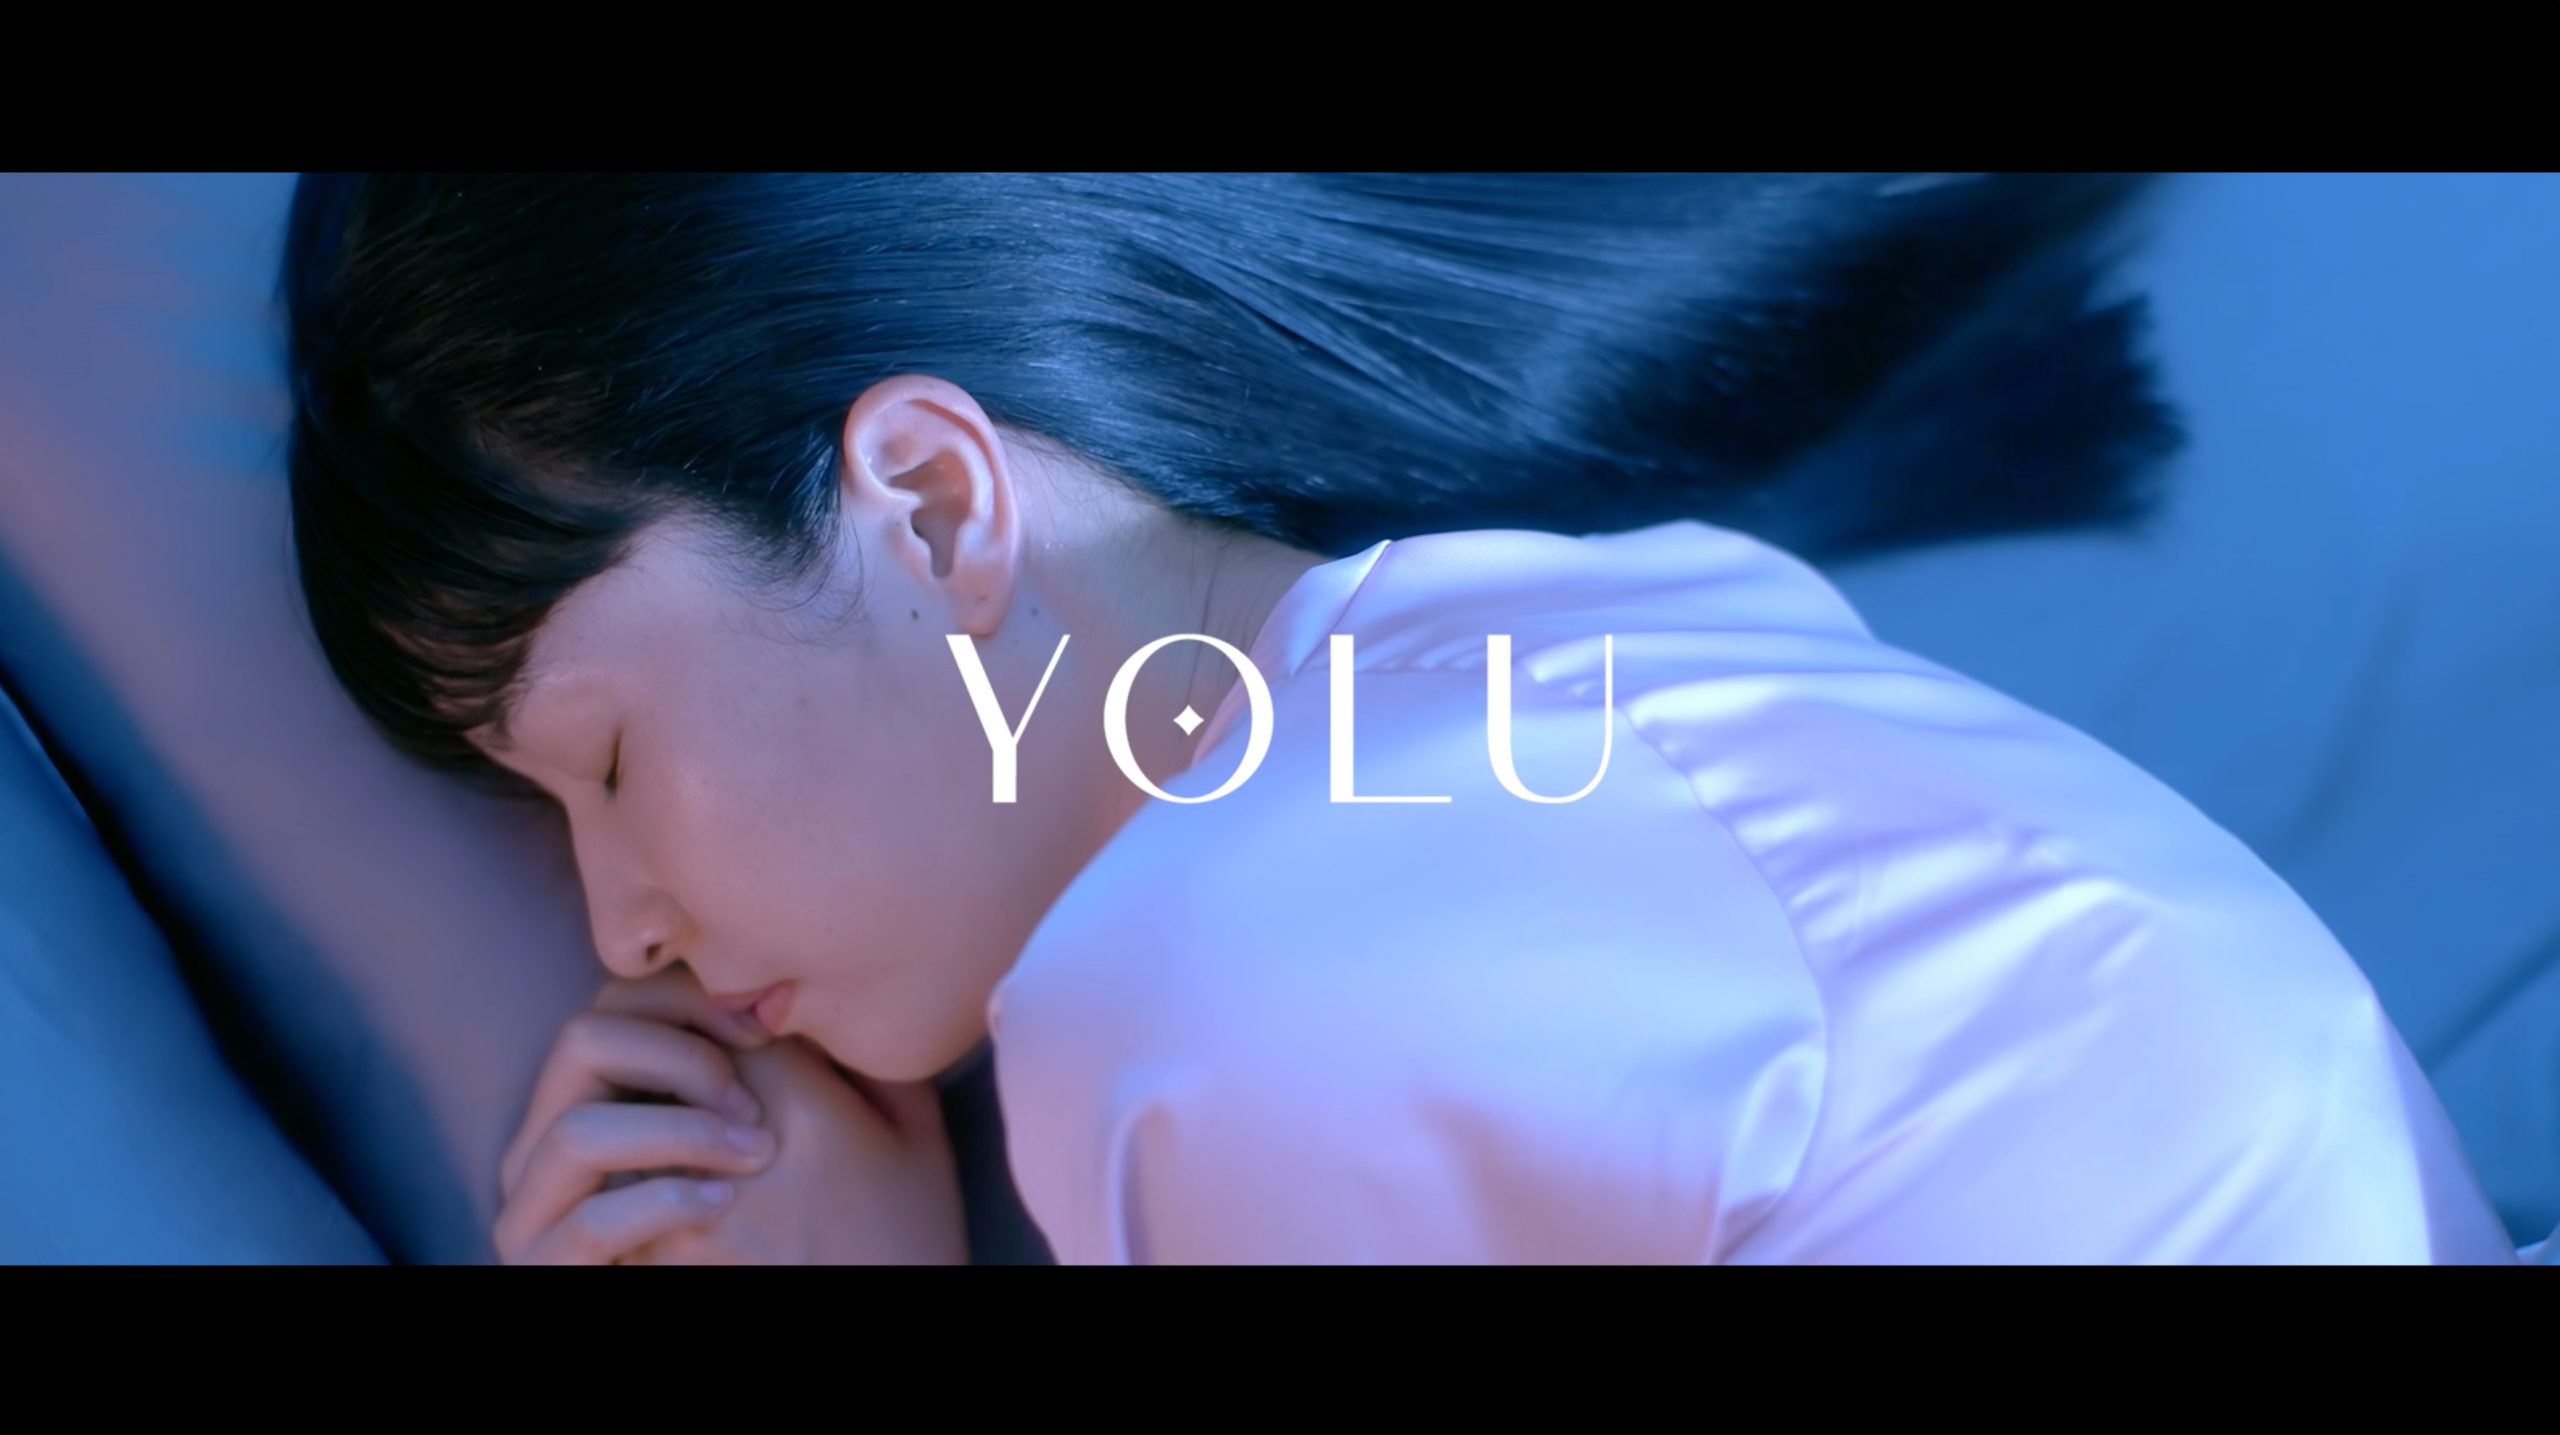 “ナイトキャップ発想”の新ヘアケアブランド「YOLU」